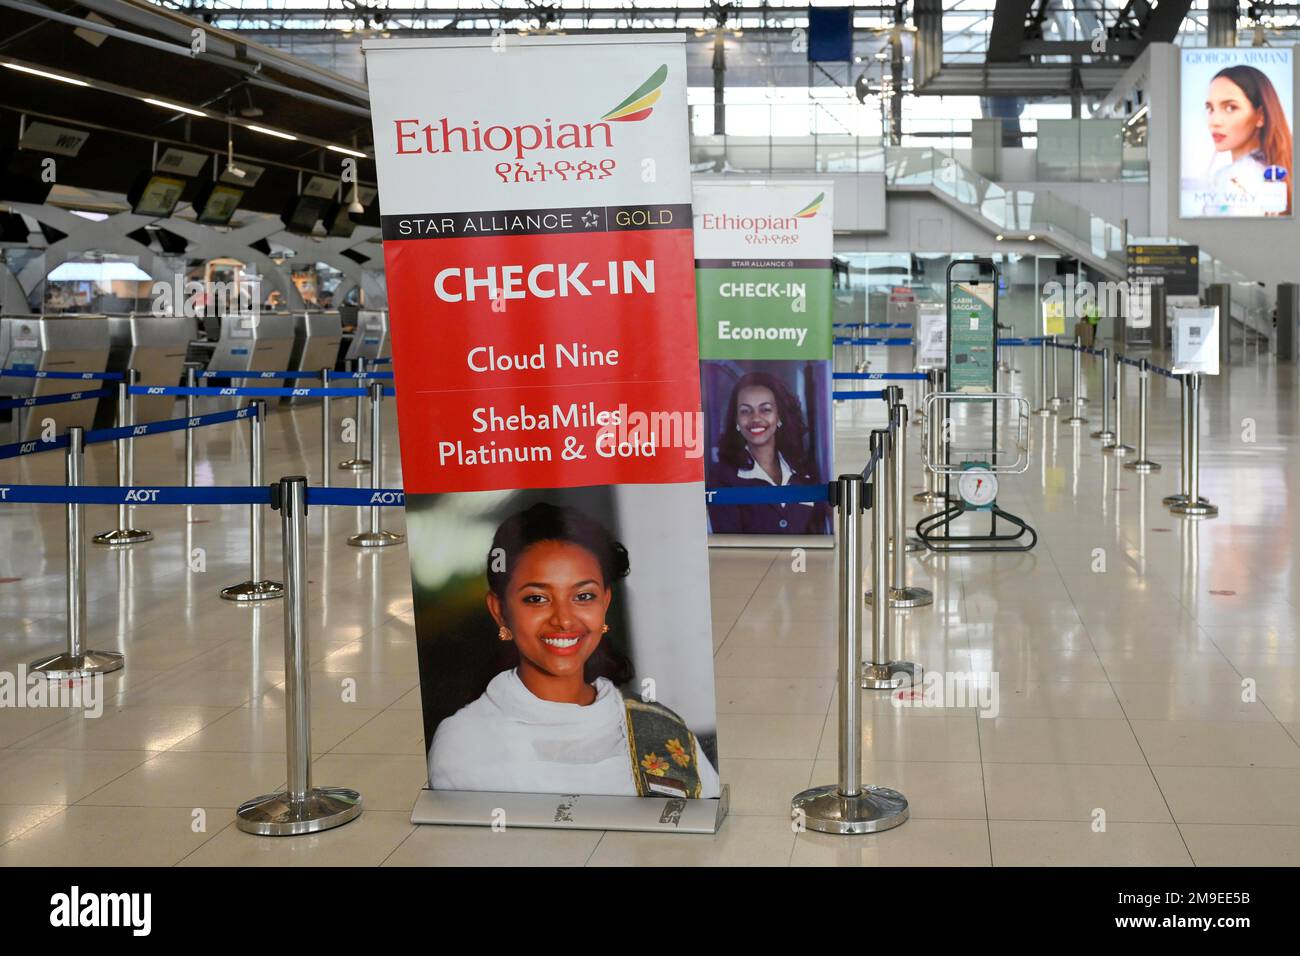 Ethiopian Airline Check-in, Suvarnabhumi Airport, Bangkok, Thailand Stock Photo